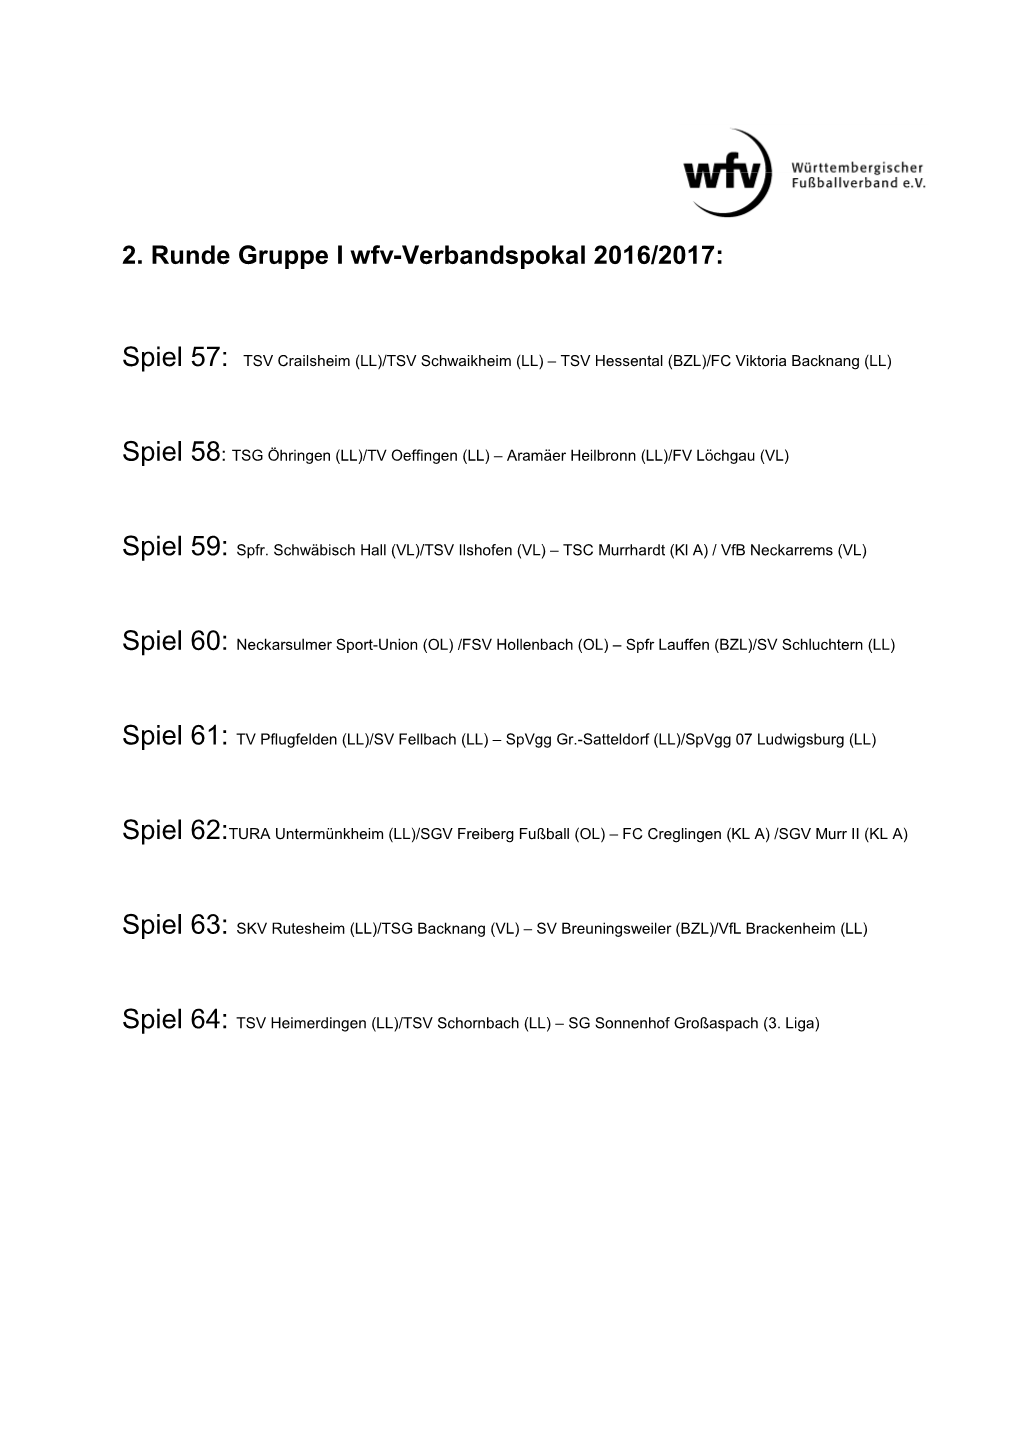 2. Runde Gruppe I Wfv-Verbandspokal 2016/2017